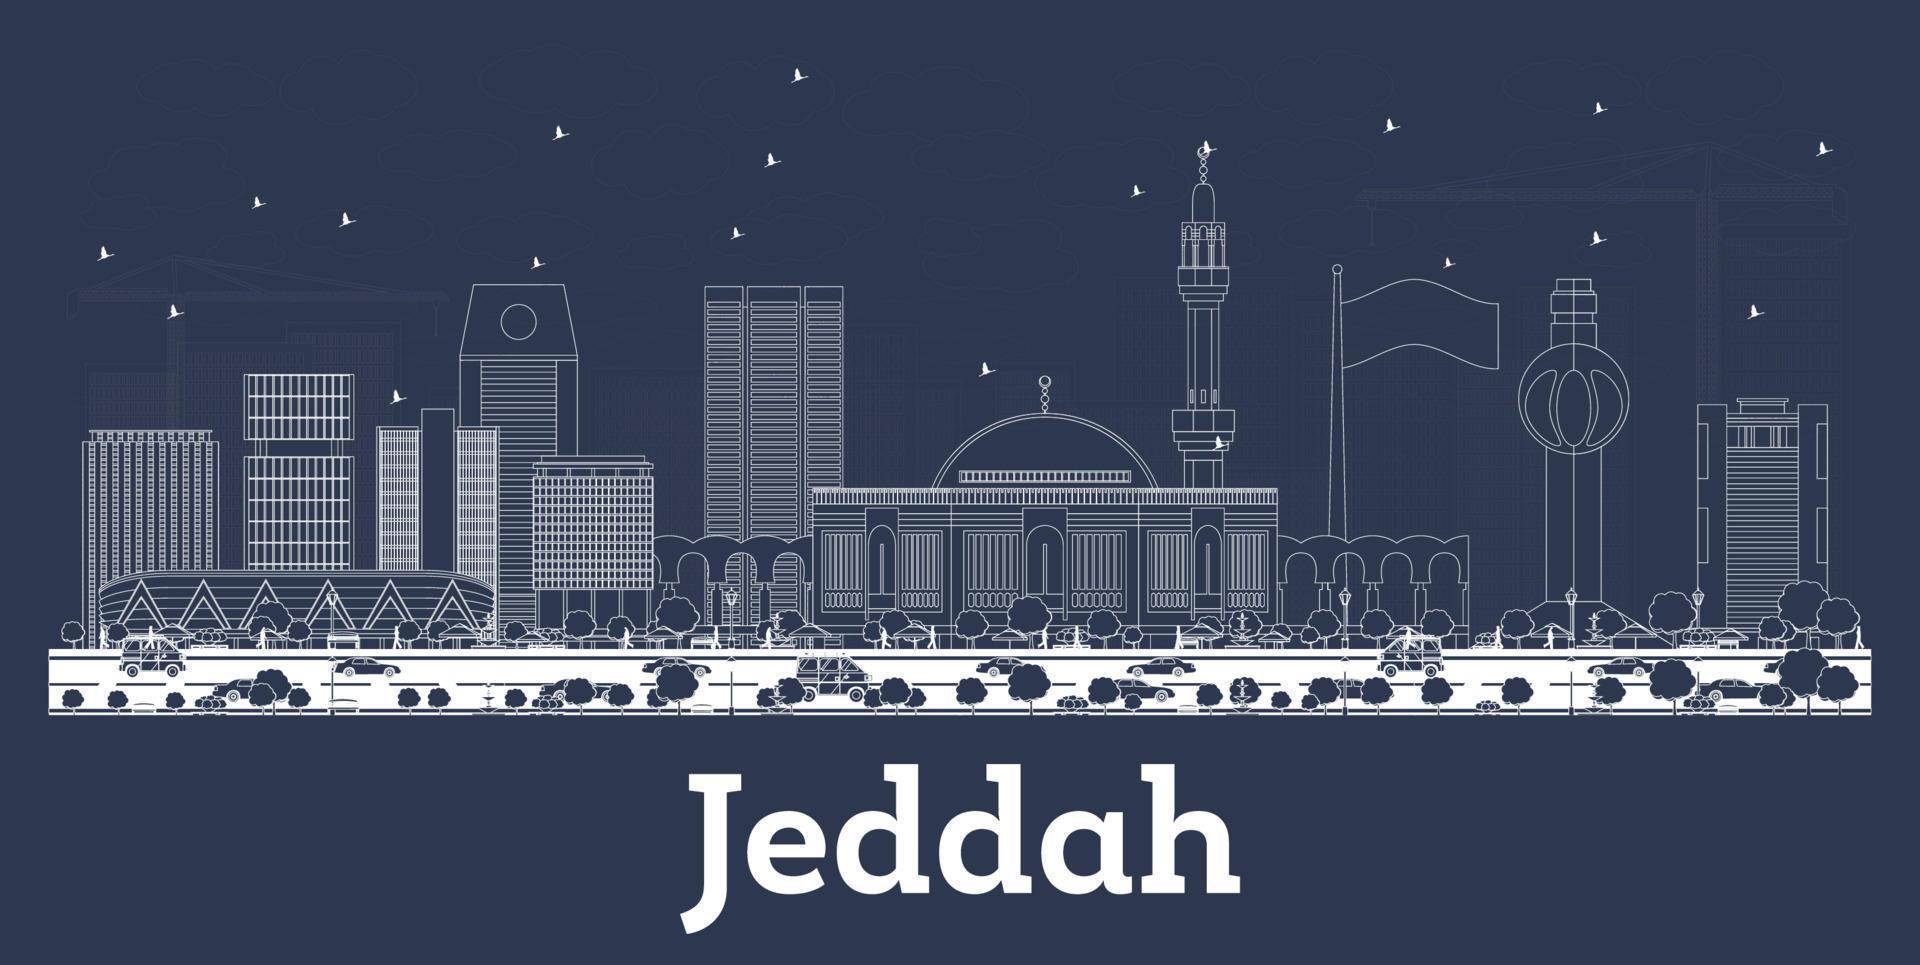 delineie o horizonte da cidade de jeddah arábia saudita com edifícios brancos. vetor